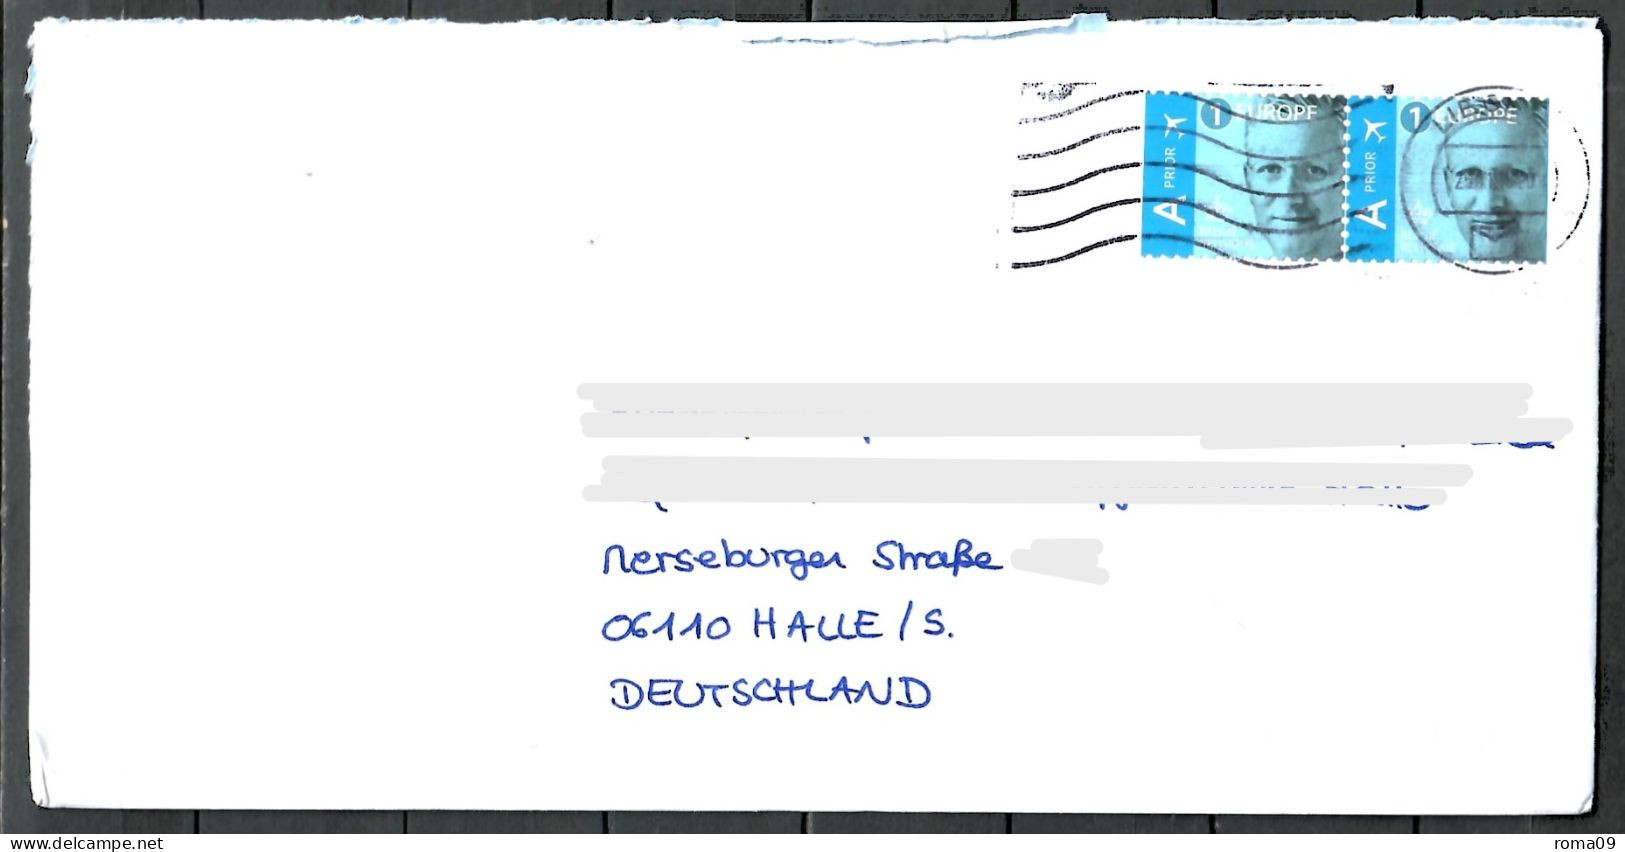 Belgien, MiNr. 4632 Dl + 4632 Dr, Auf Brief Nach Deutschland, E-88 - Lettres & Documents